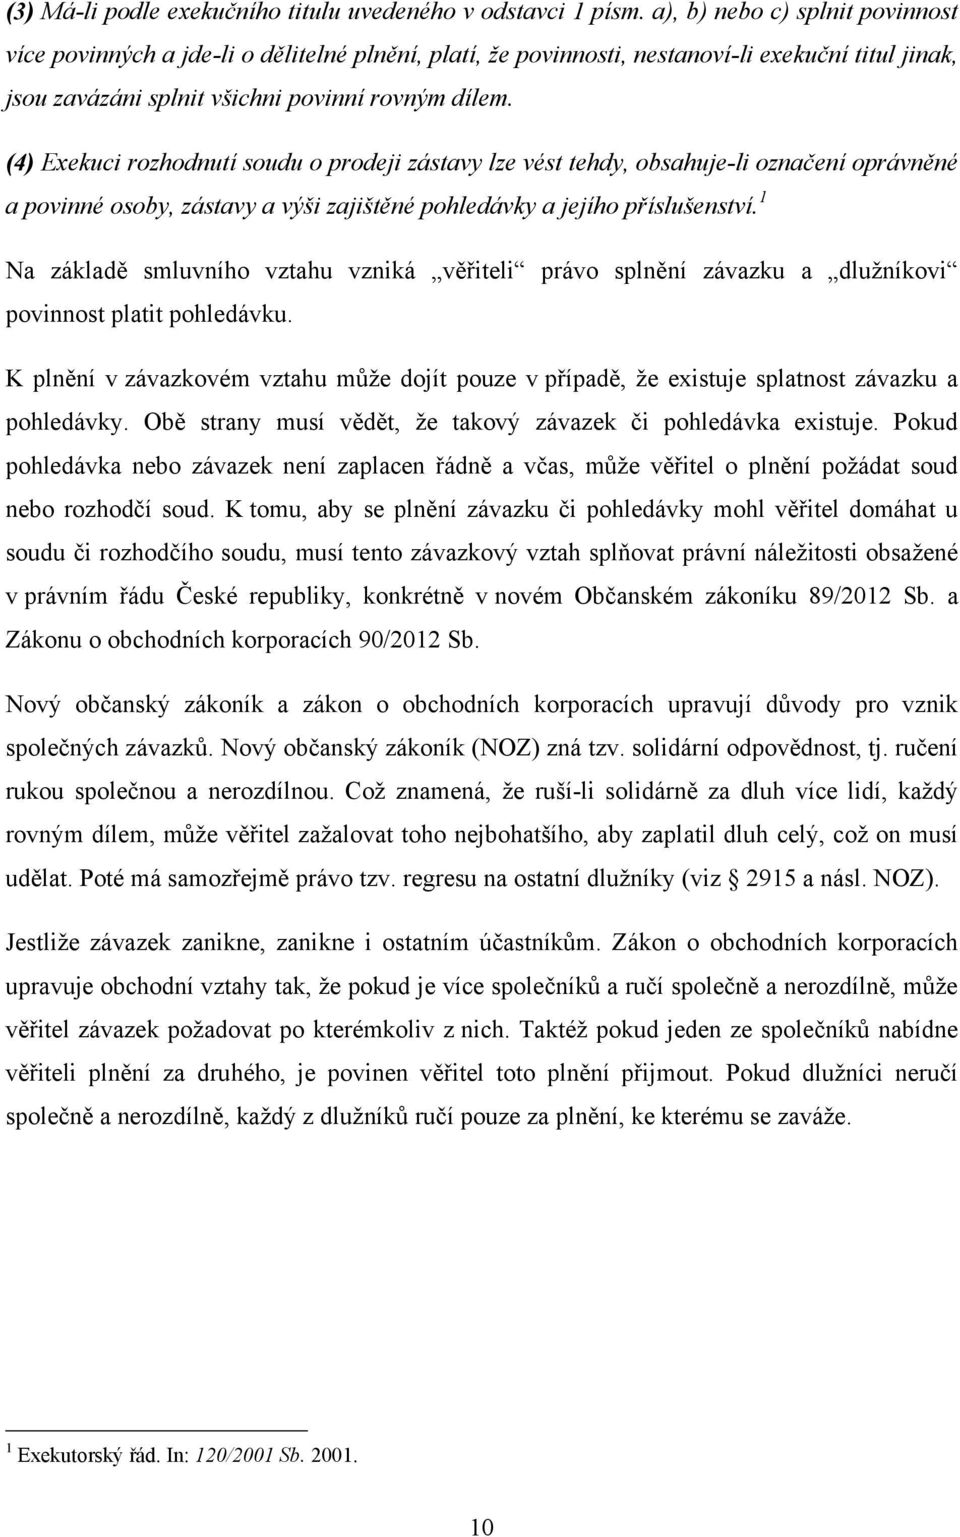 Exekuce v právním řádu České republiky - PDF Stažení zdarma